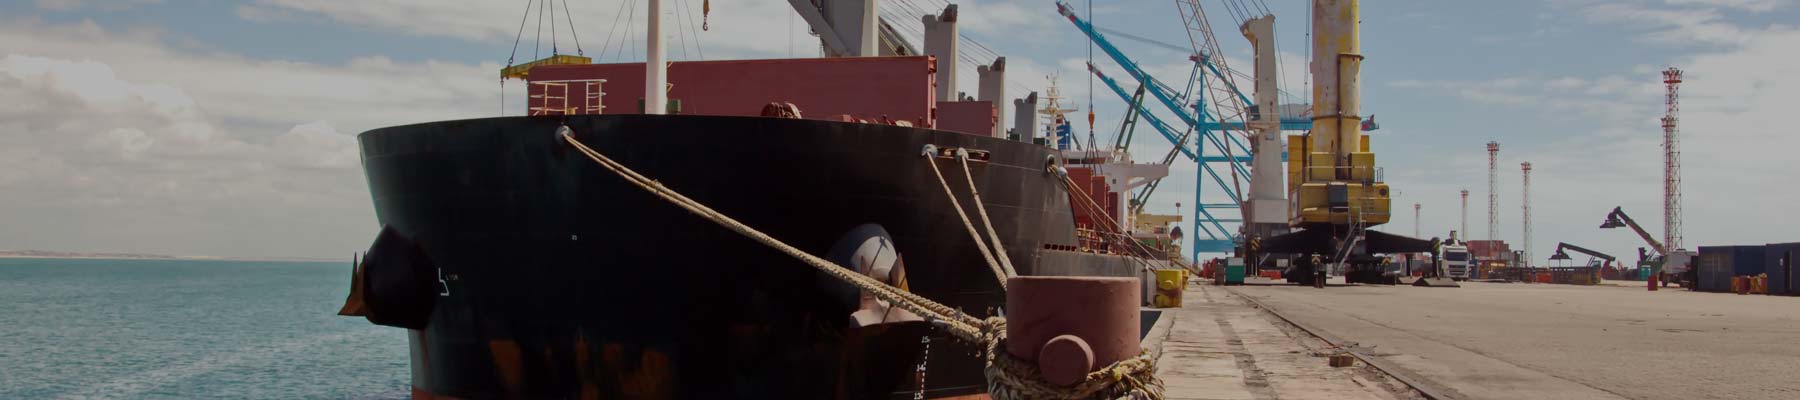 Docking rope holding ship